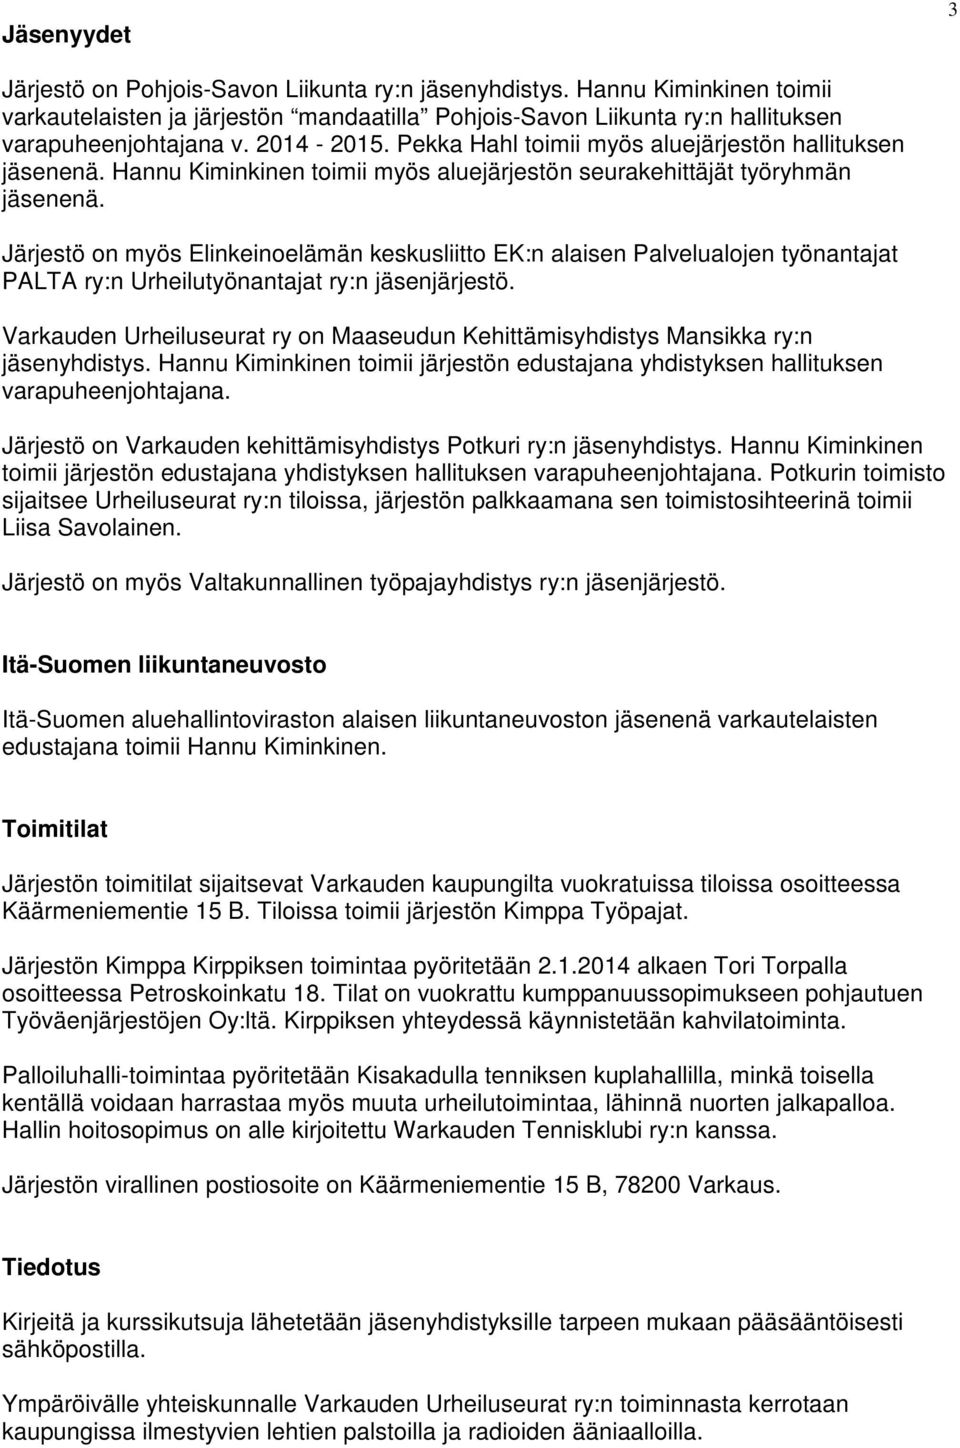 Järjestö on myös Elinkeinoelämän keskusliitto EK:n alaisen Palvelualojen työnantajat PALTA ry:n Urheilutyönantajat ry:n jäsenjärjestö.